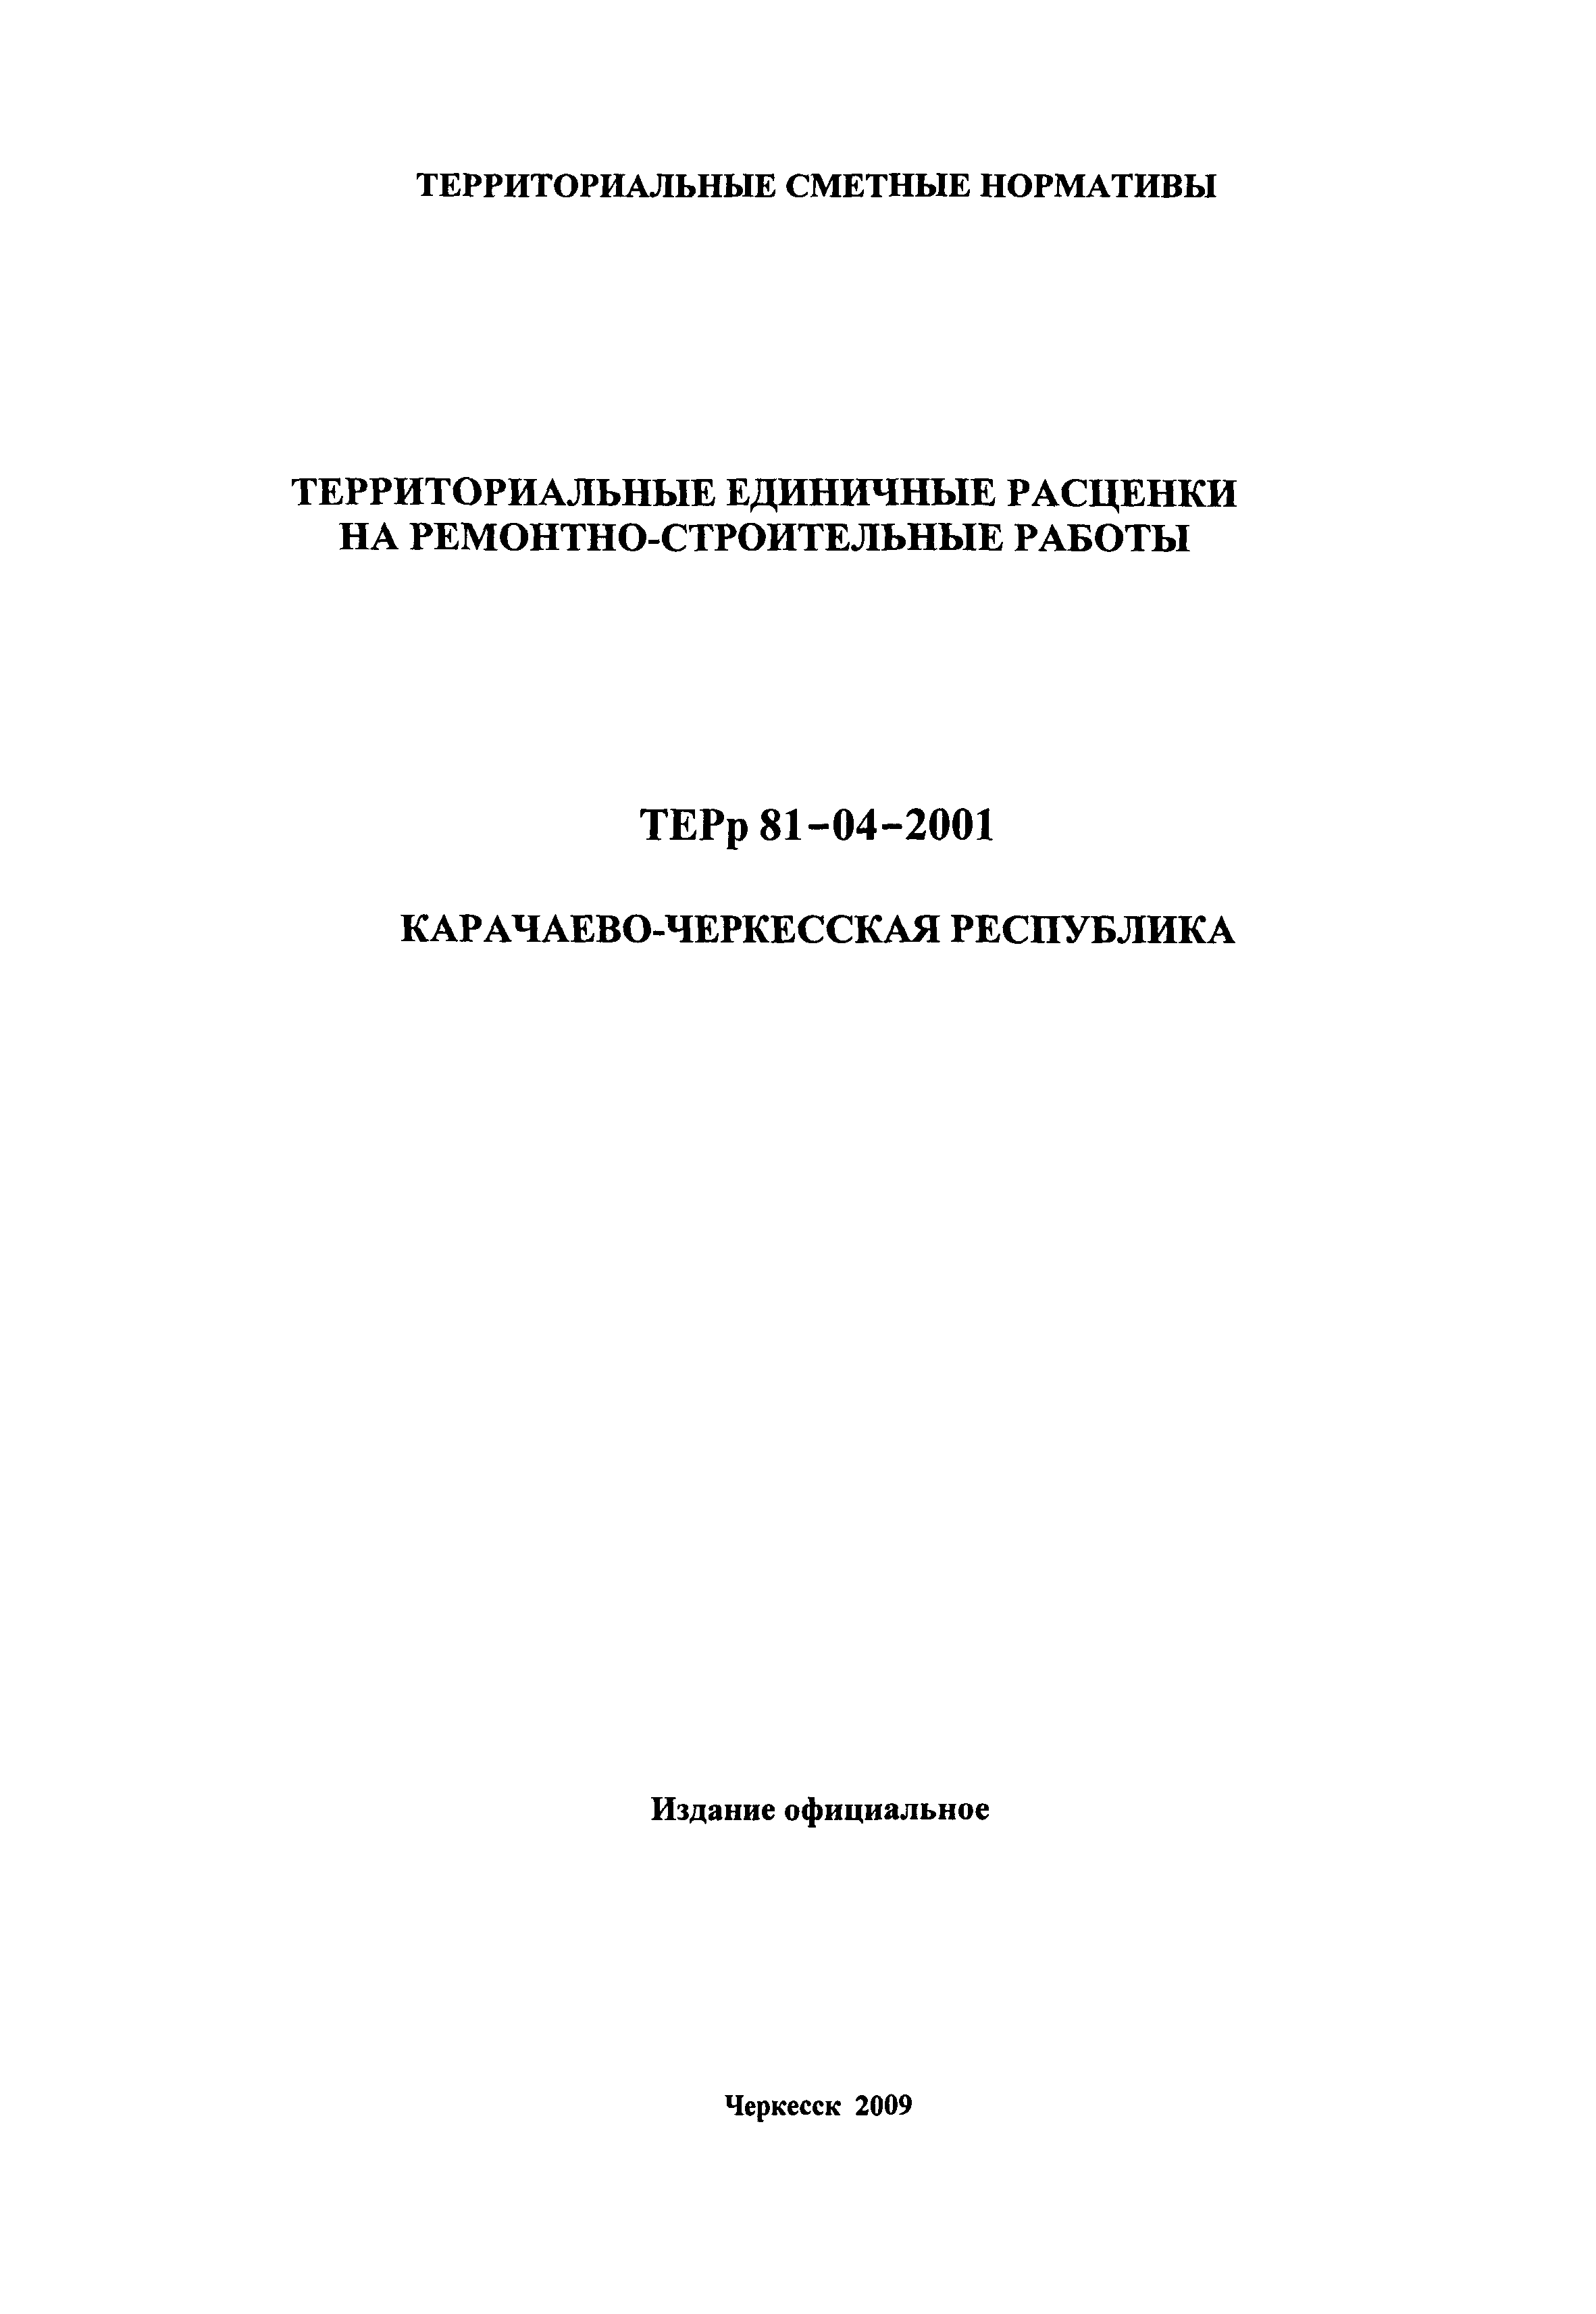 ТЕРр Карачаево-Черкесская Республика 2001-61